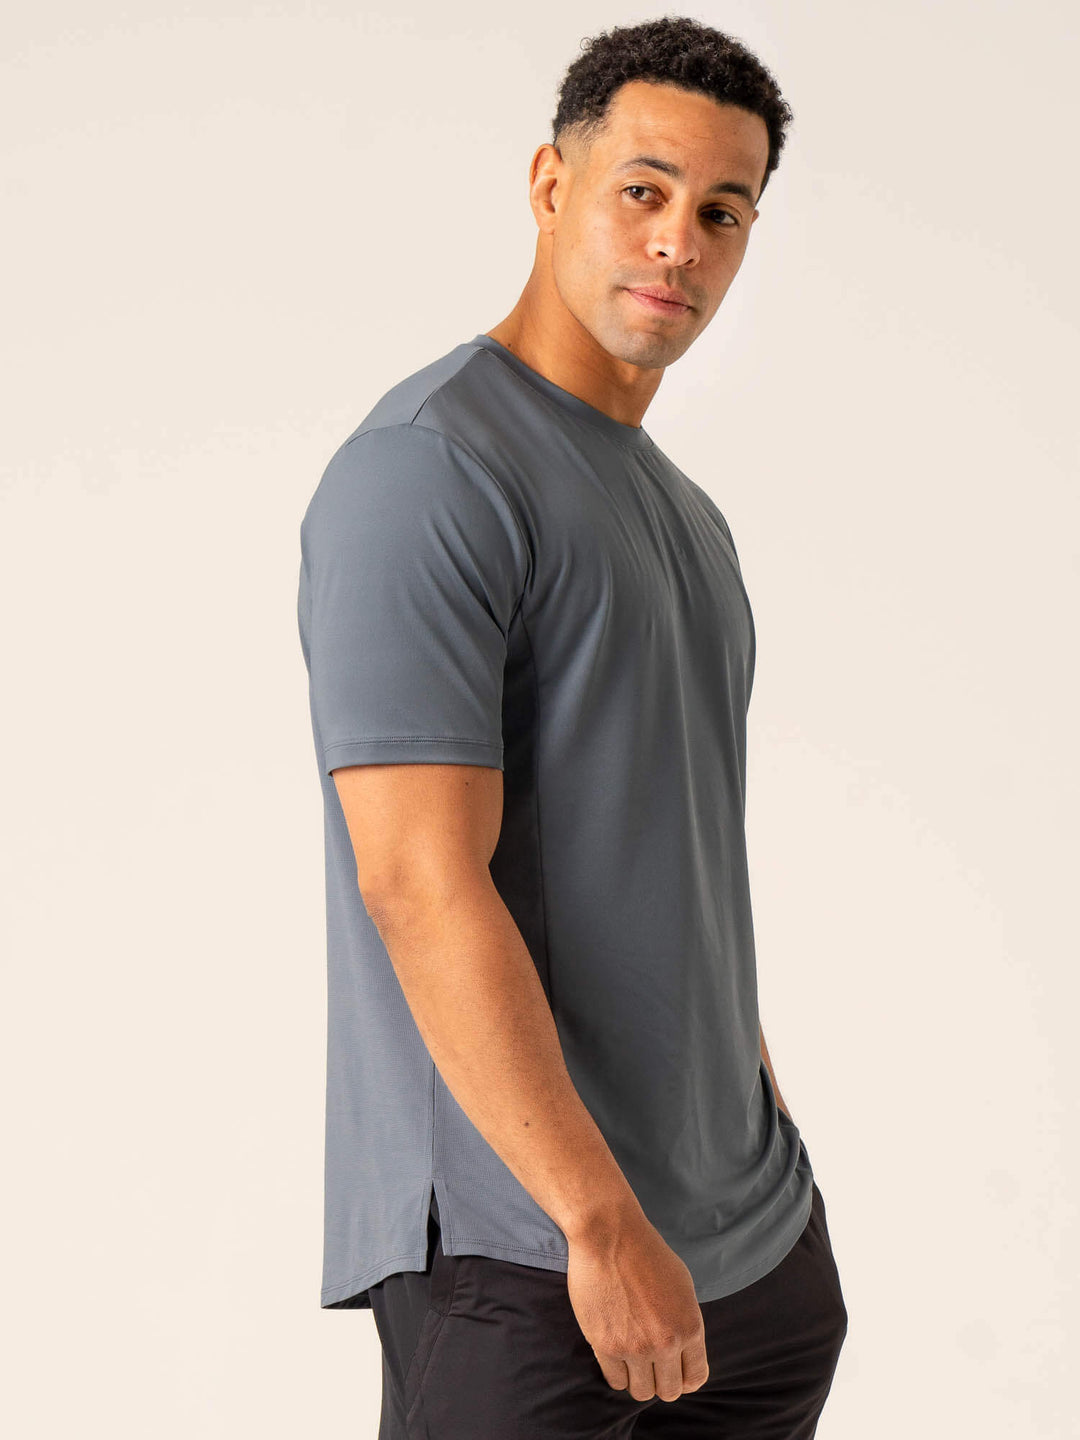 Dynamic T-Shirt - Petrol Clothing Ryderwear 